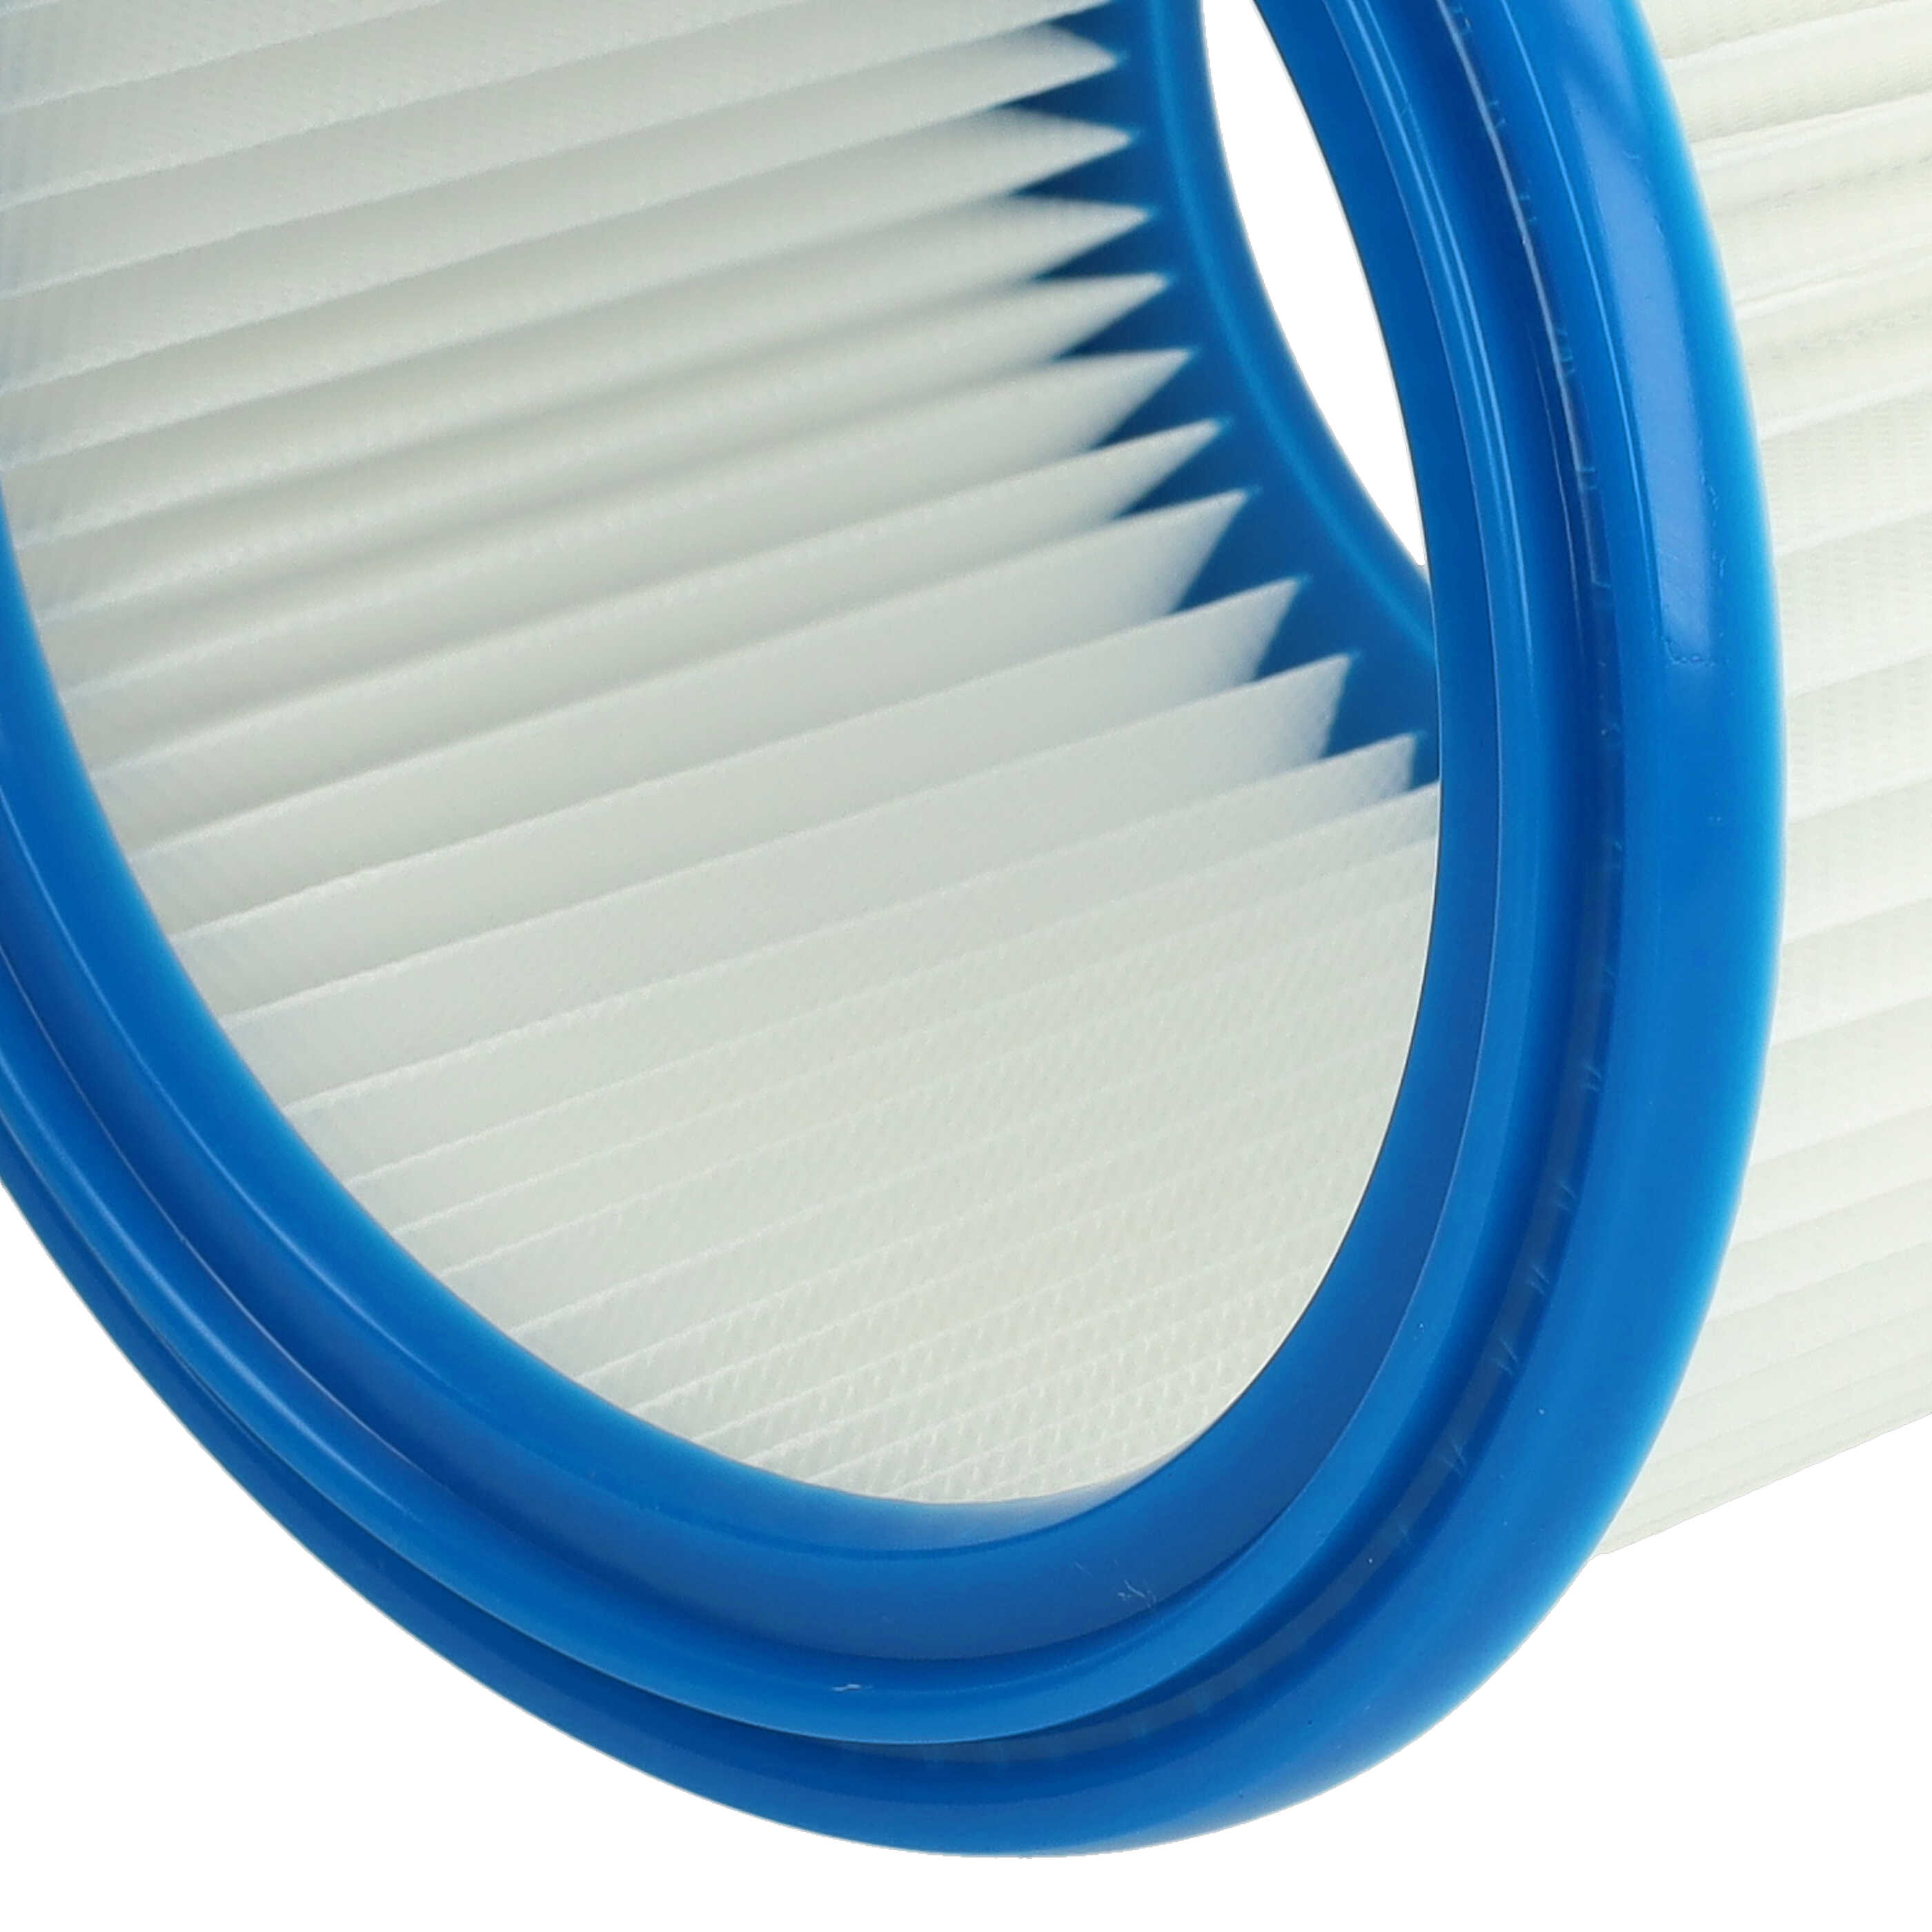 2x Filtro sostituisce Bosch 2607432024 per aspirapolvere - filtro rotondo, bianco / blu